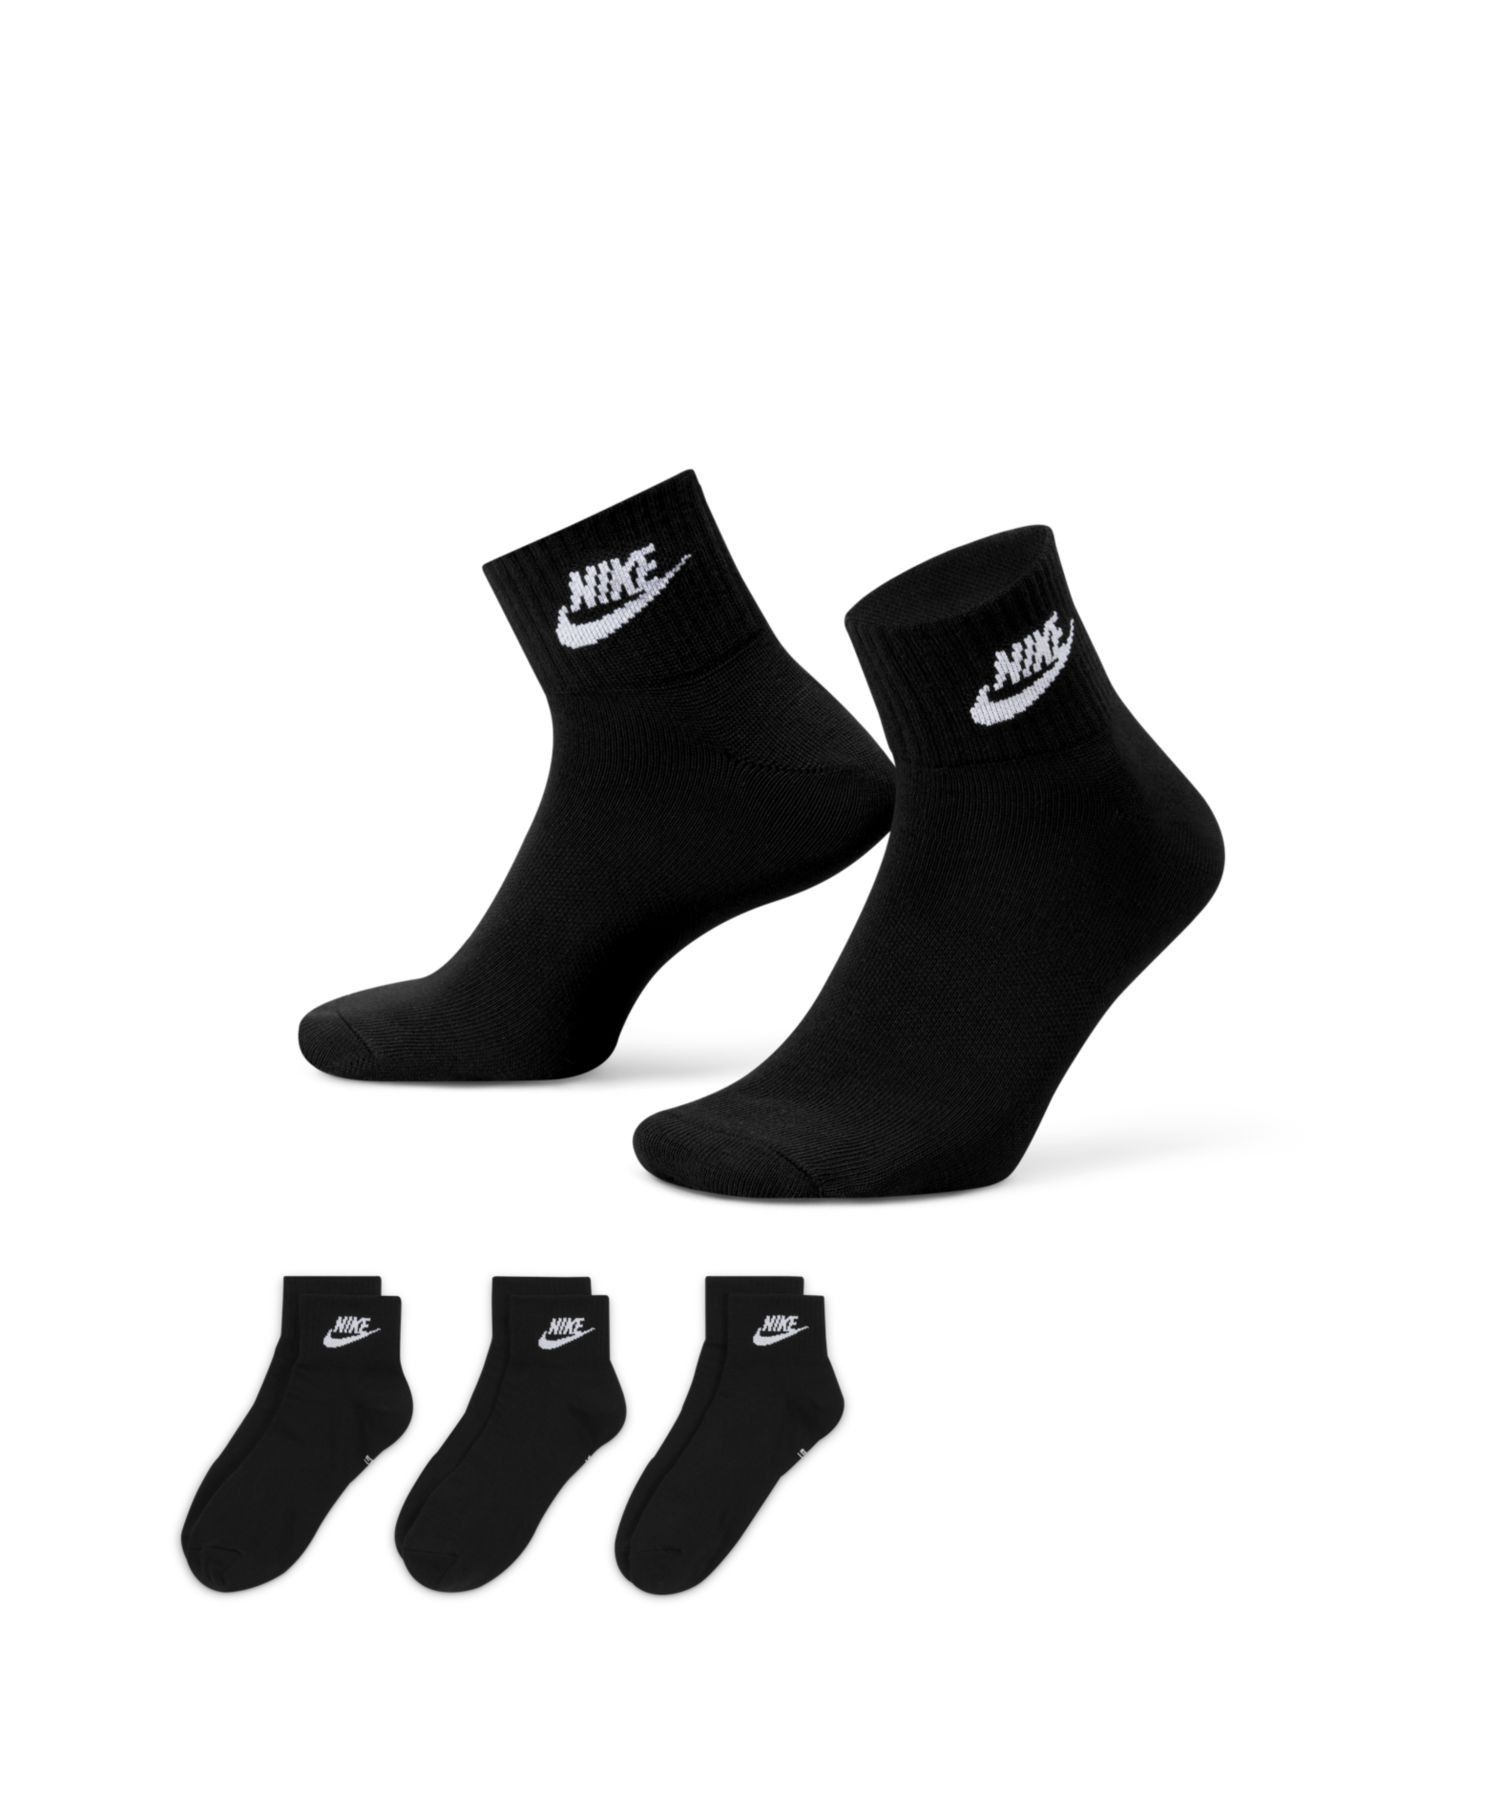 １着でも送料無料 人気大割引 NIKEナイキ エブリデイ エッセンシャル アンクル ソックス 3足 Nike Everyday Essential Ankle Socks 3 Pairs 23-29cm 展開 noblelinaje.com noblelinaje.com